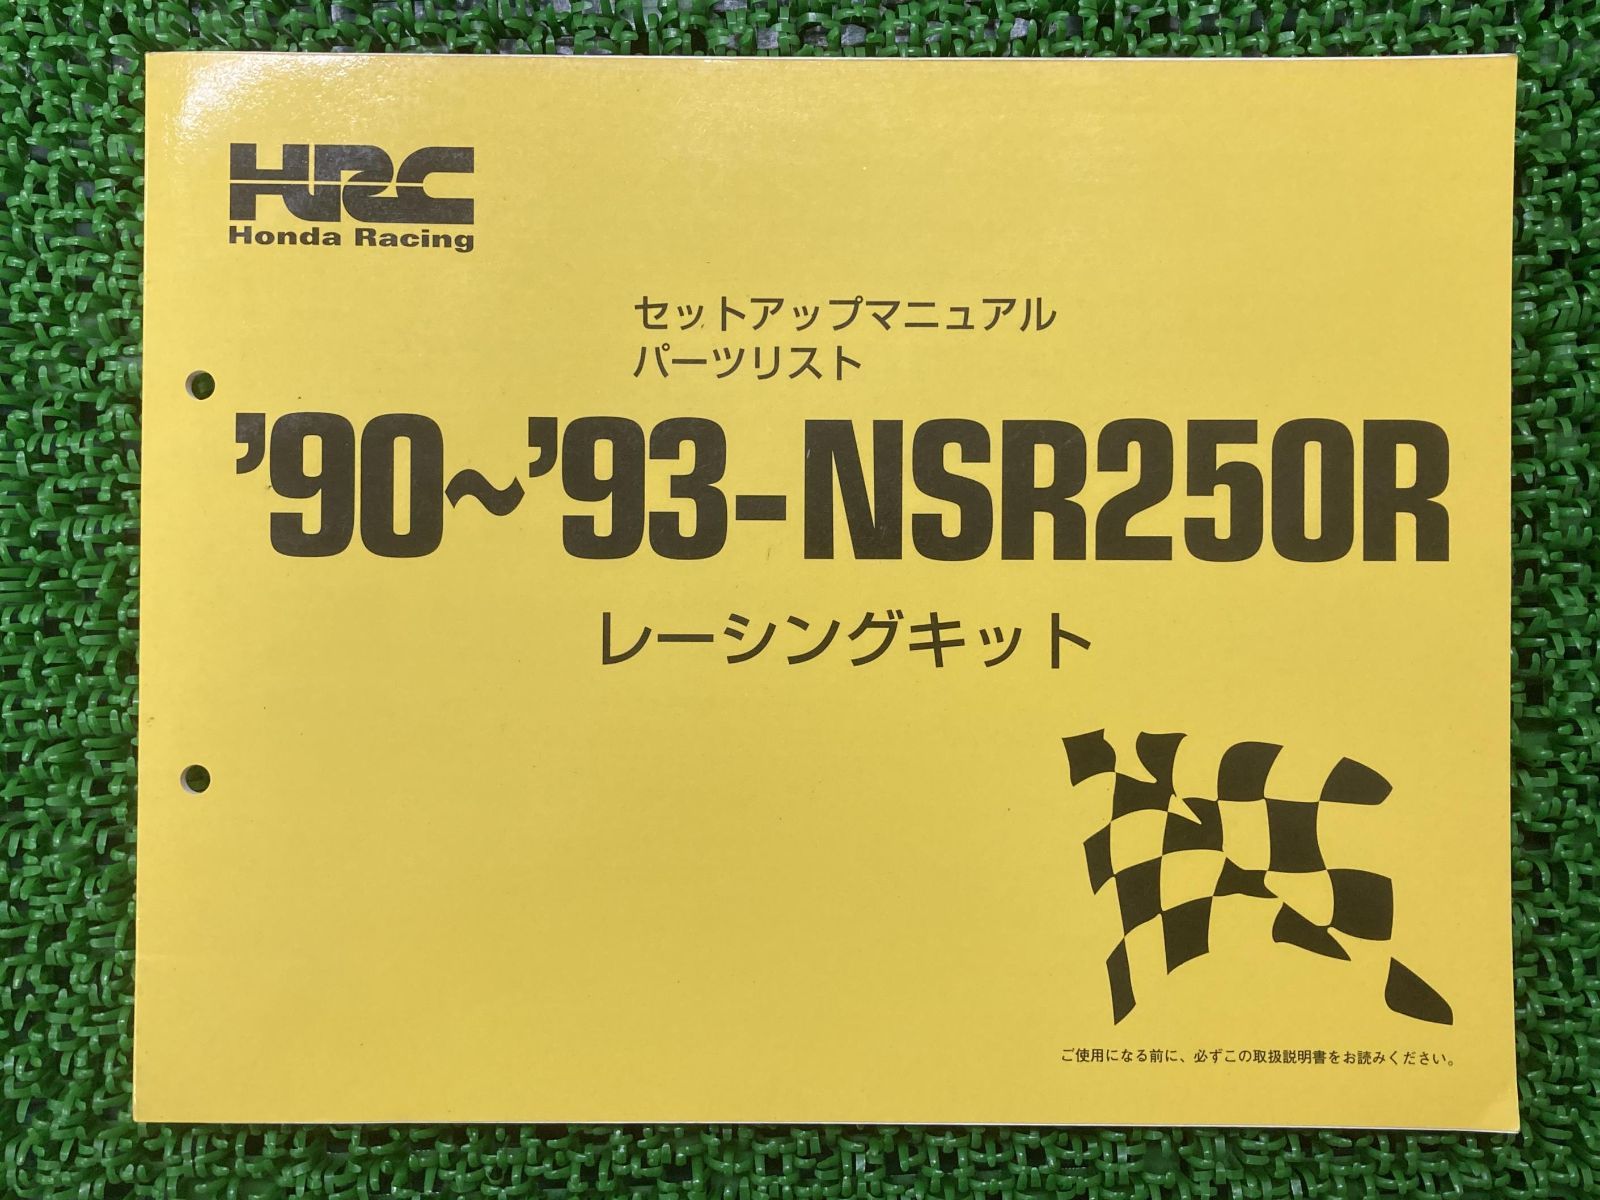 NSR250R サービスマニュアル HRC 92 セットアップ パーツリスト - バイク